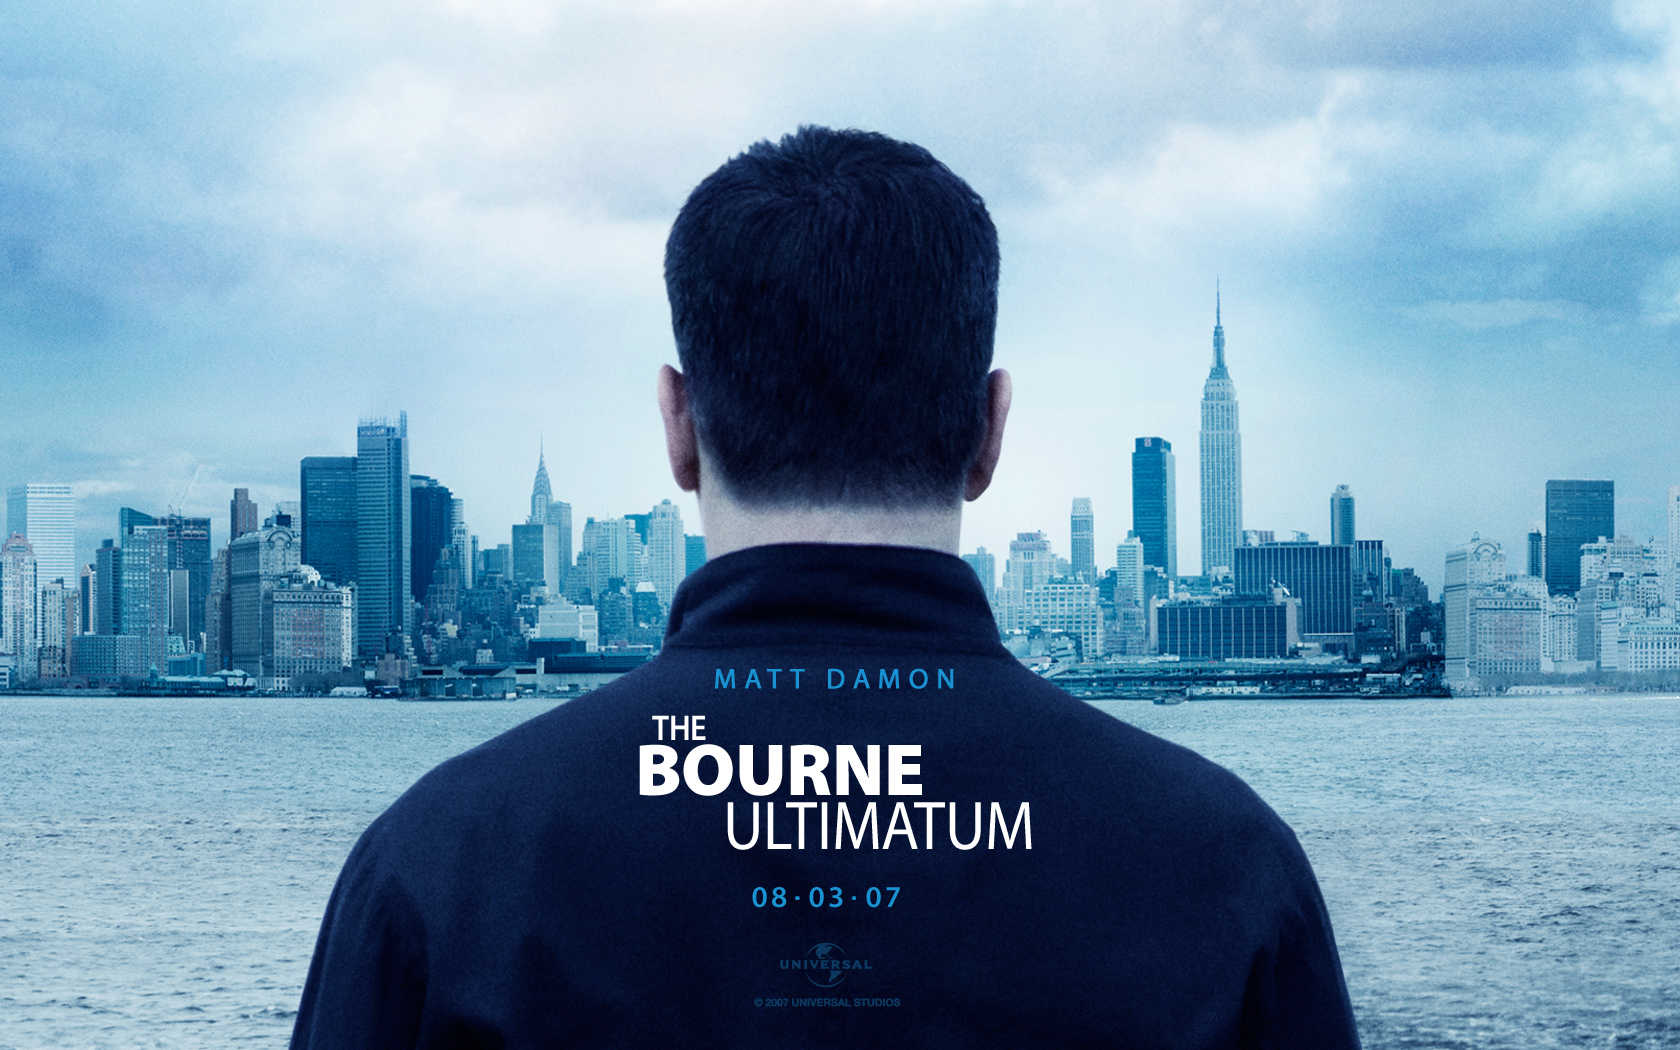 Bourne: Matt Damon in HD desktop wallpaper.